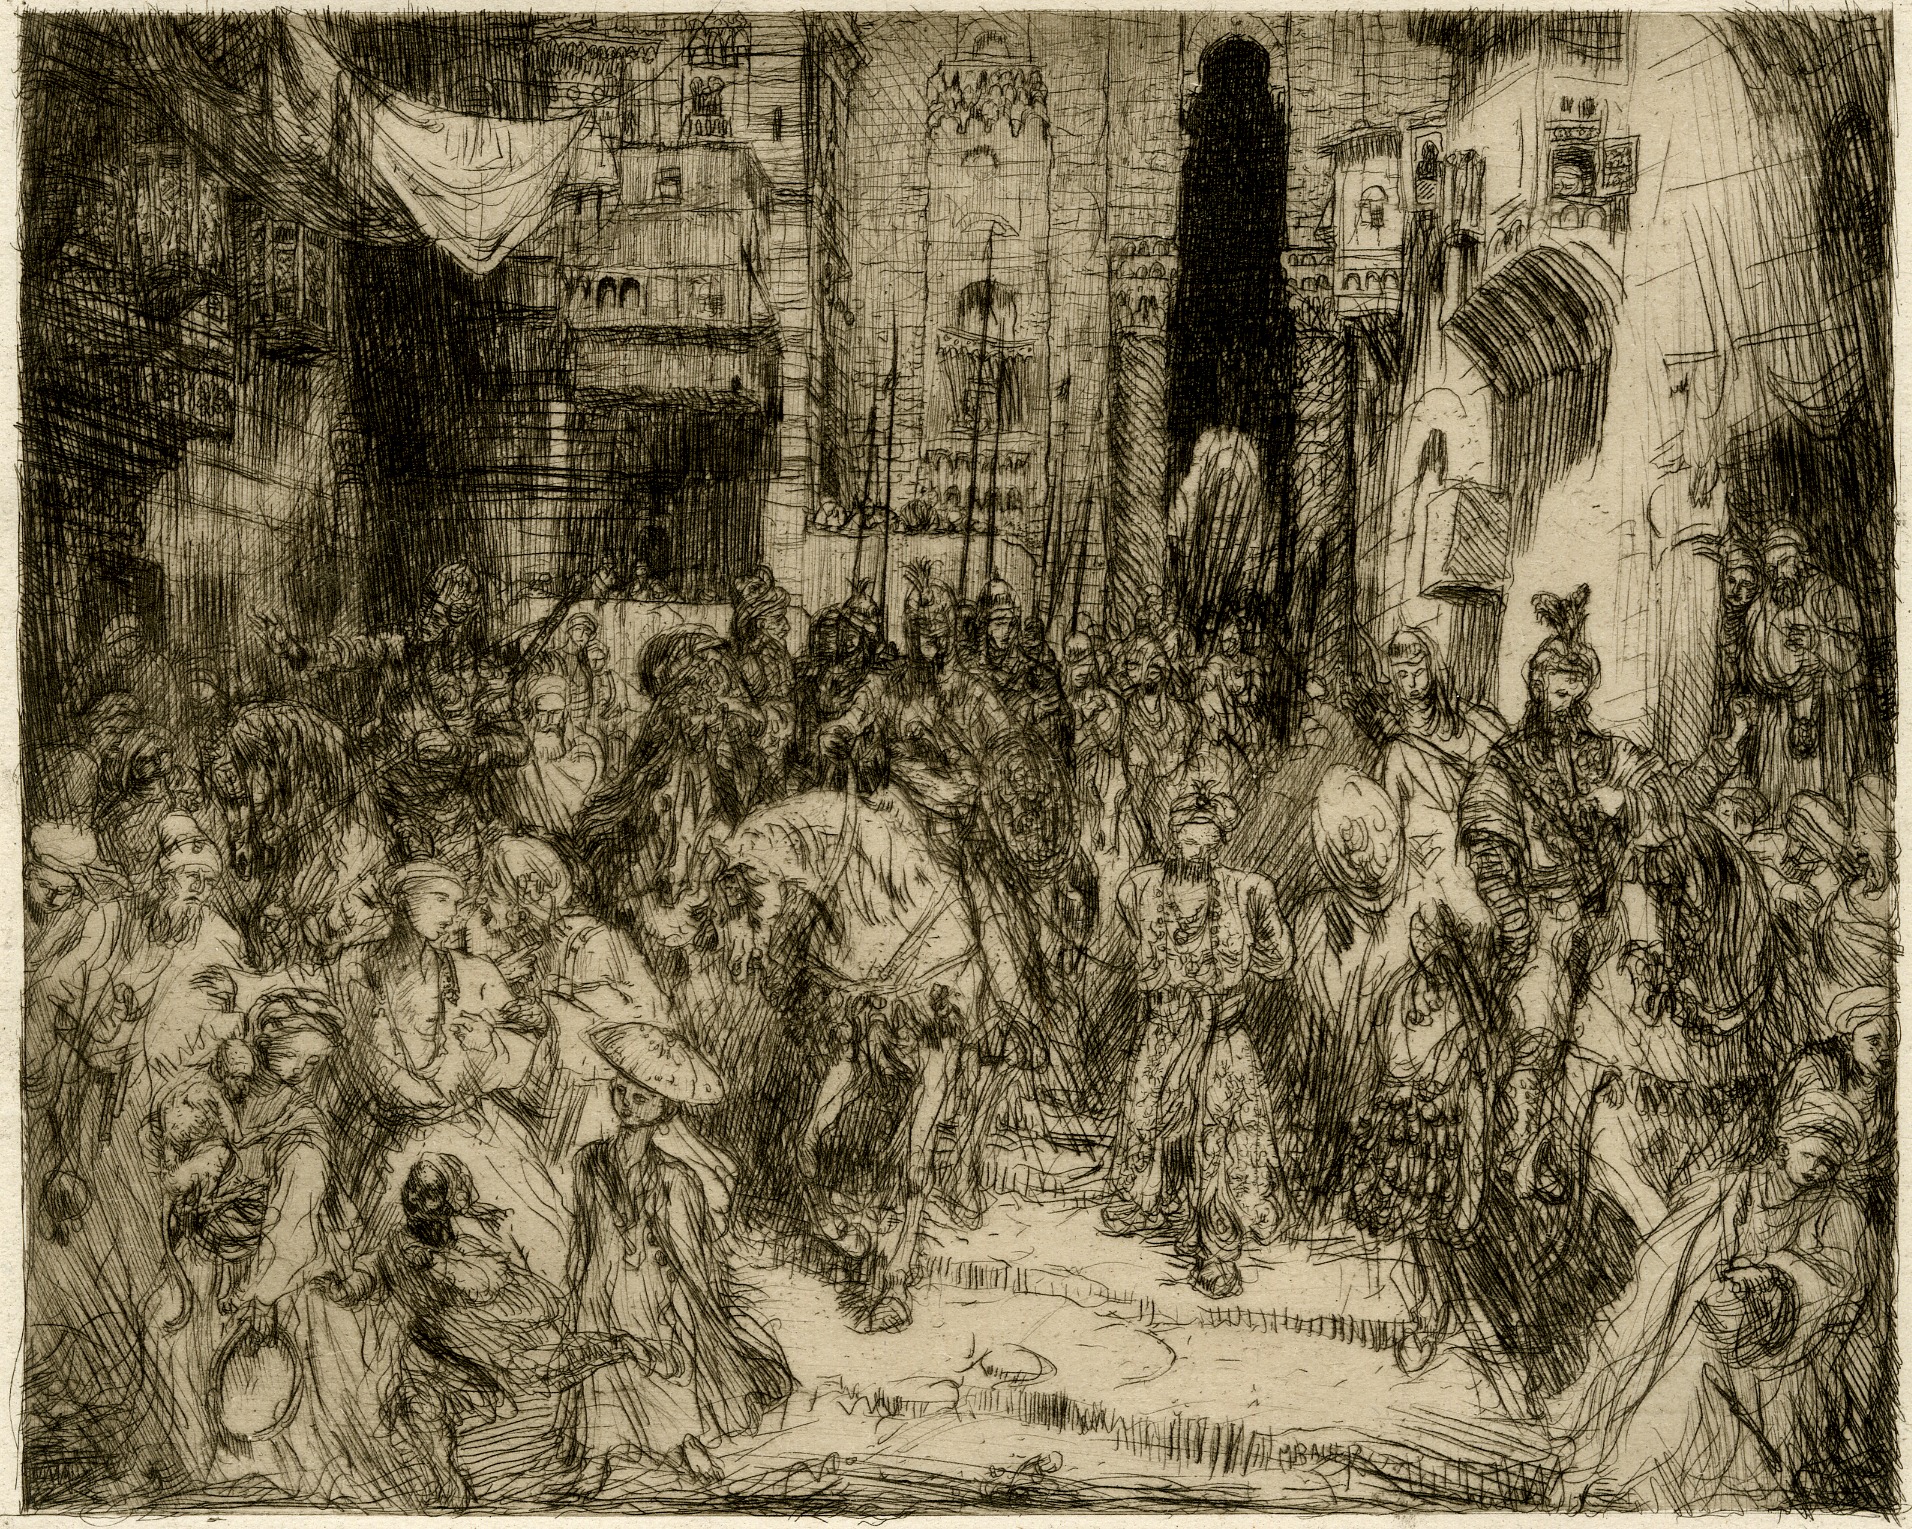 Aladdin (King of Jerusalem in Tasso's epic poem Gerusalemme Liberata) (1893)